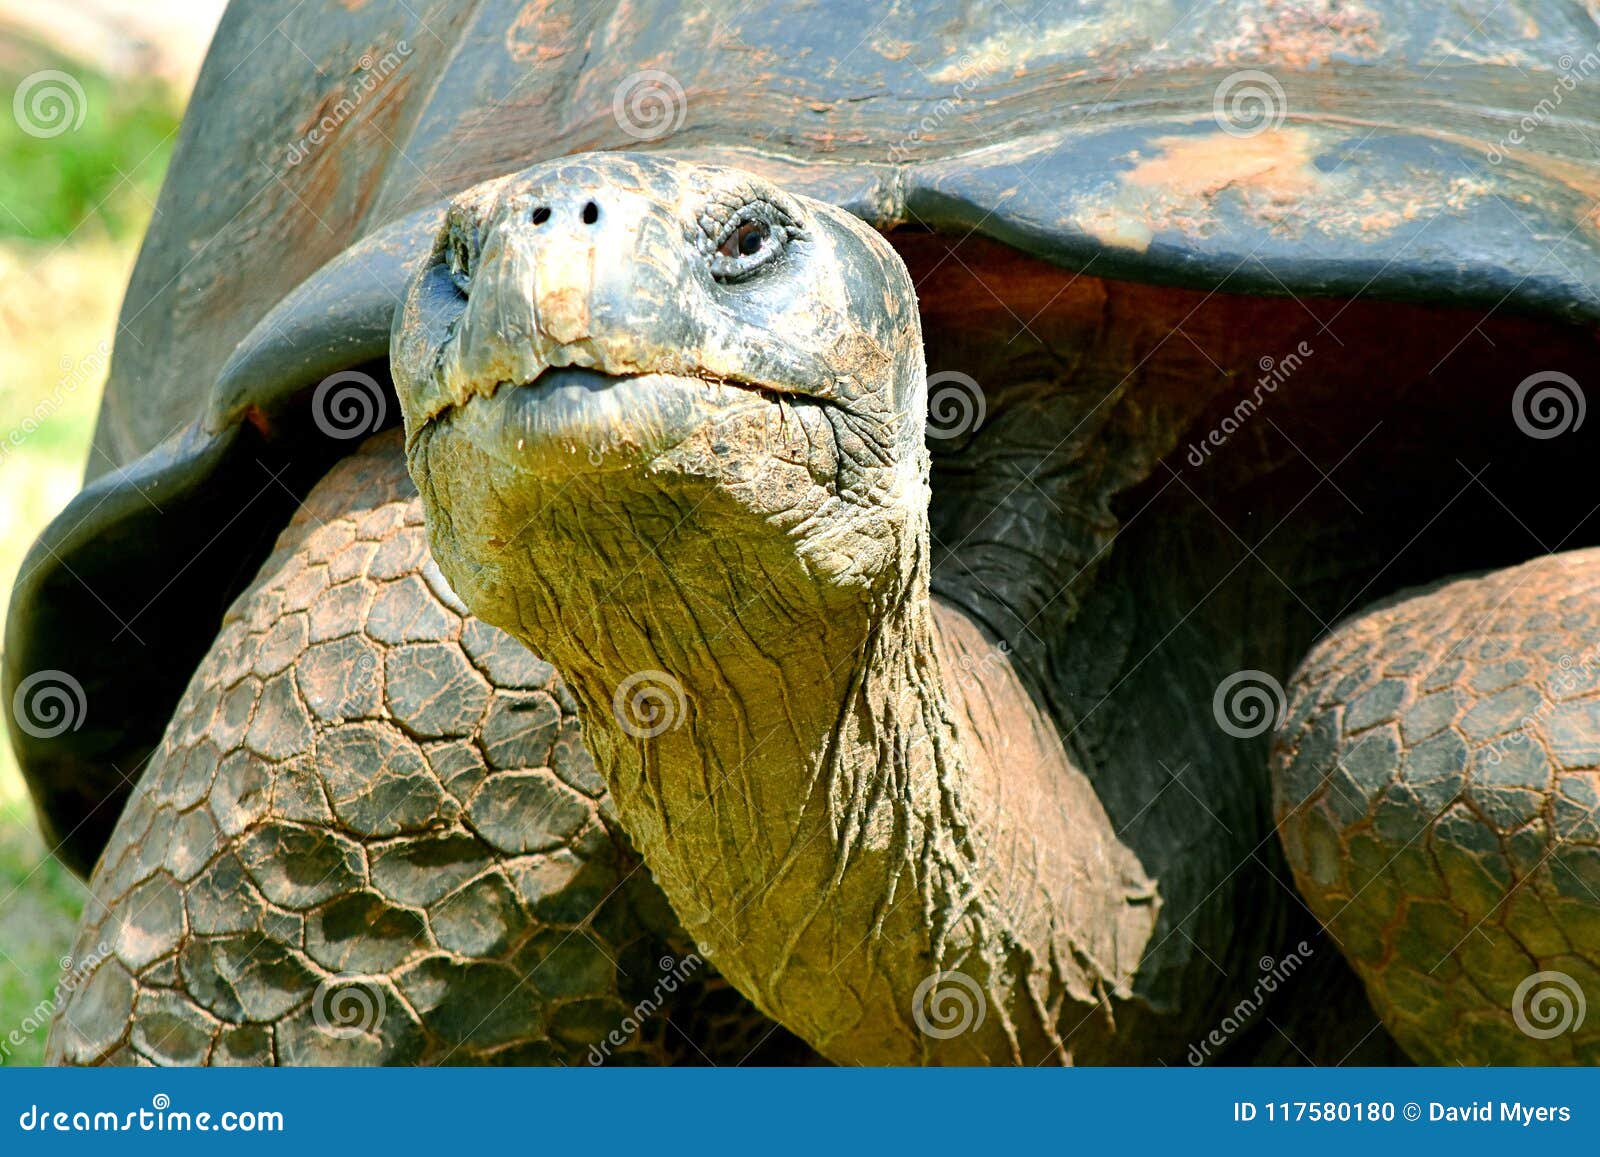 galÃÂ¡pagos tortoise, oklahoma city zoo, 95 years old